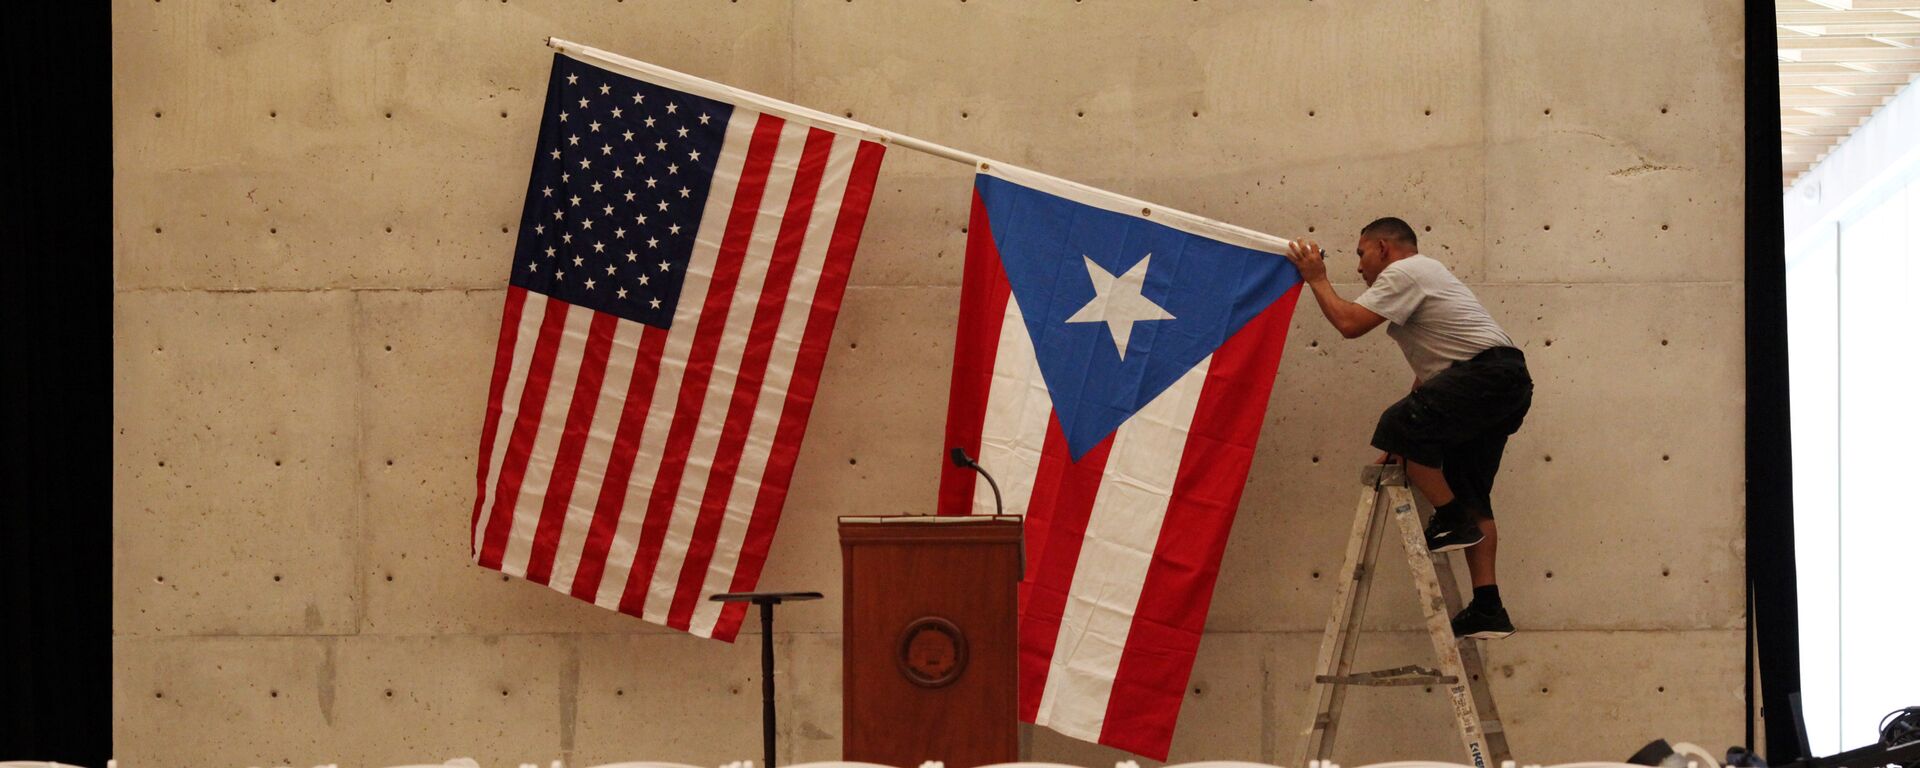 Banderas de EEUU y Puerto Rico - Sputnik Mundo, 1920, 22.09.2018